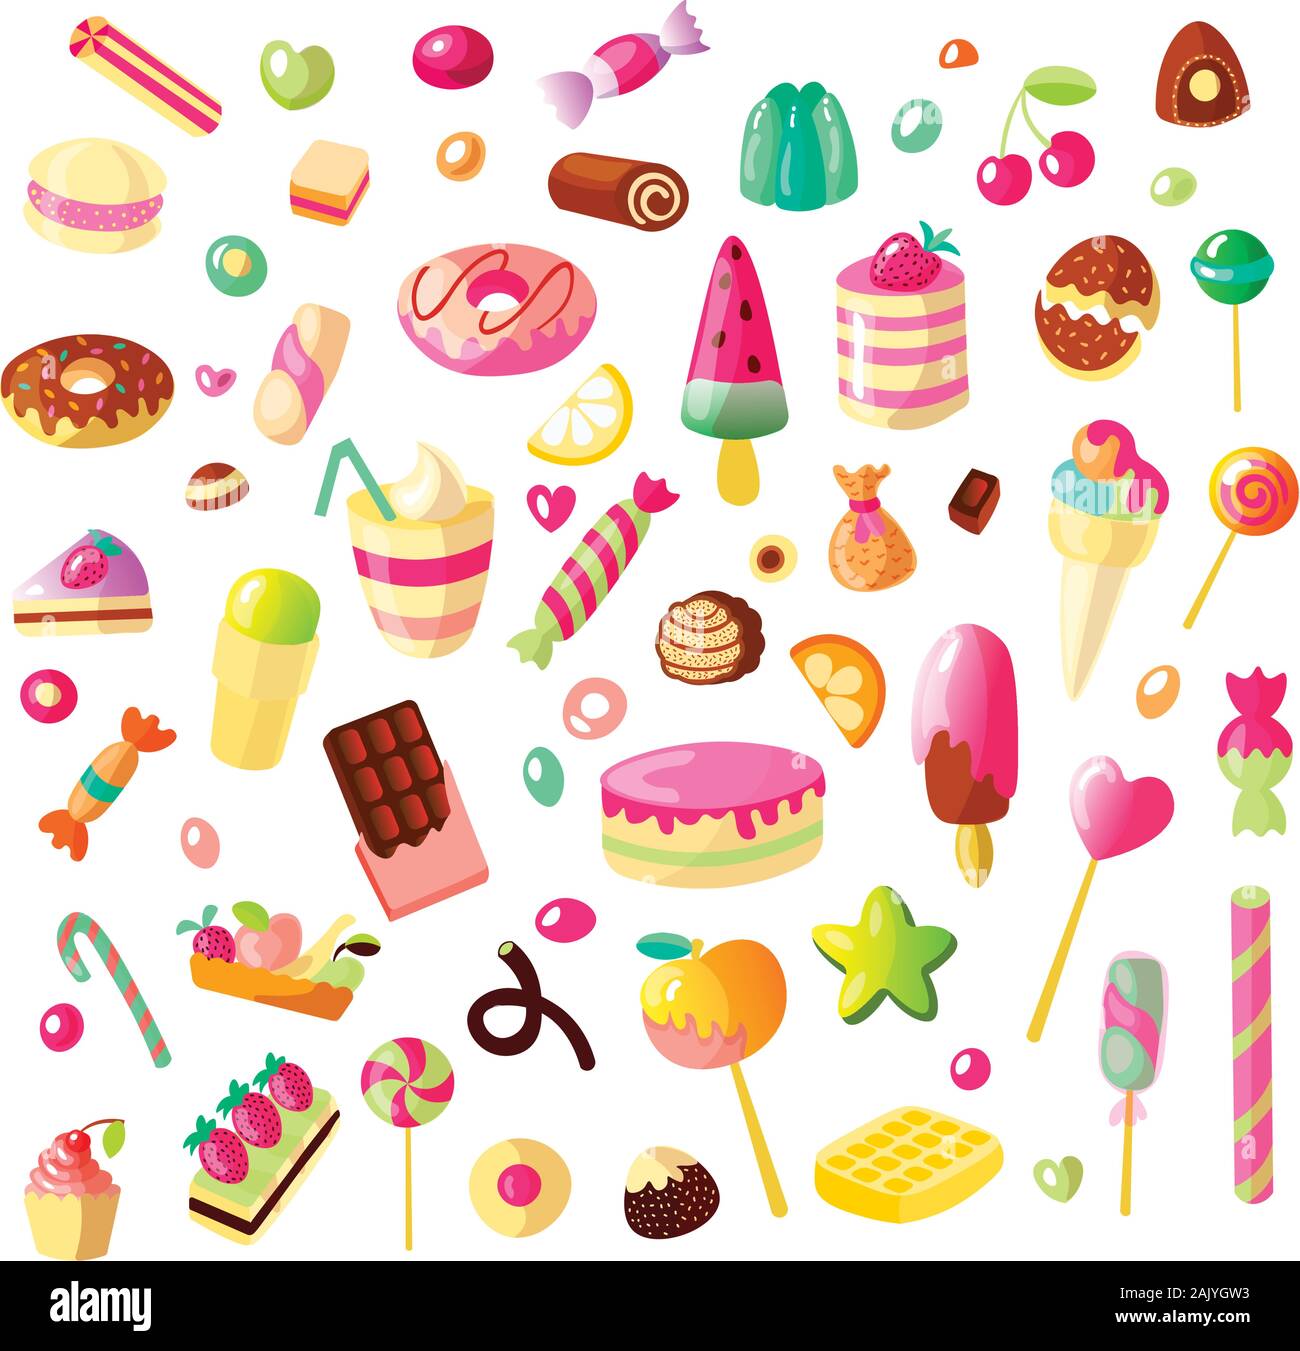 Eingestellt von Cartoon süsse bonbons auf weißem Hintergrund. Gelee, Süßigkeiten, Kuchen, süße Krapfen und Marmelade. Lollipop, Baumwolle, Donut und gestreifte Karamell Stock Vektor